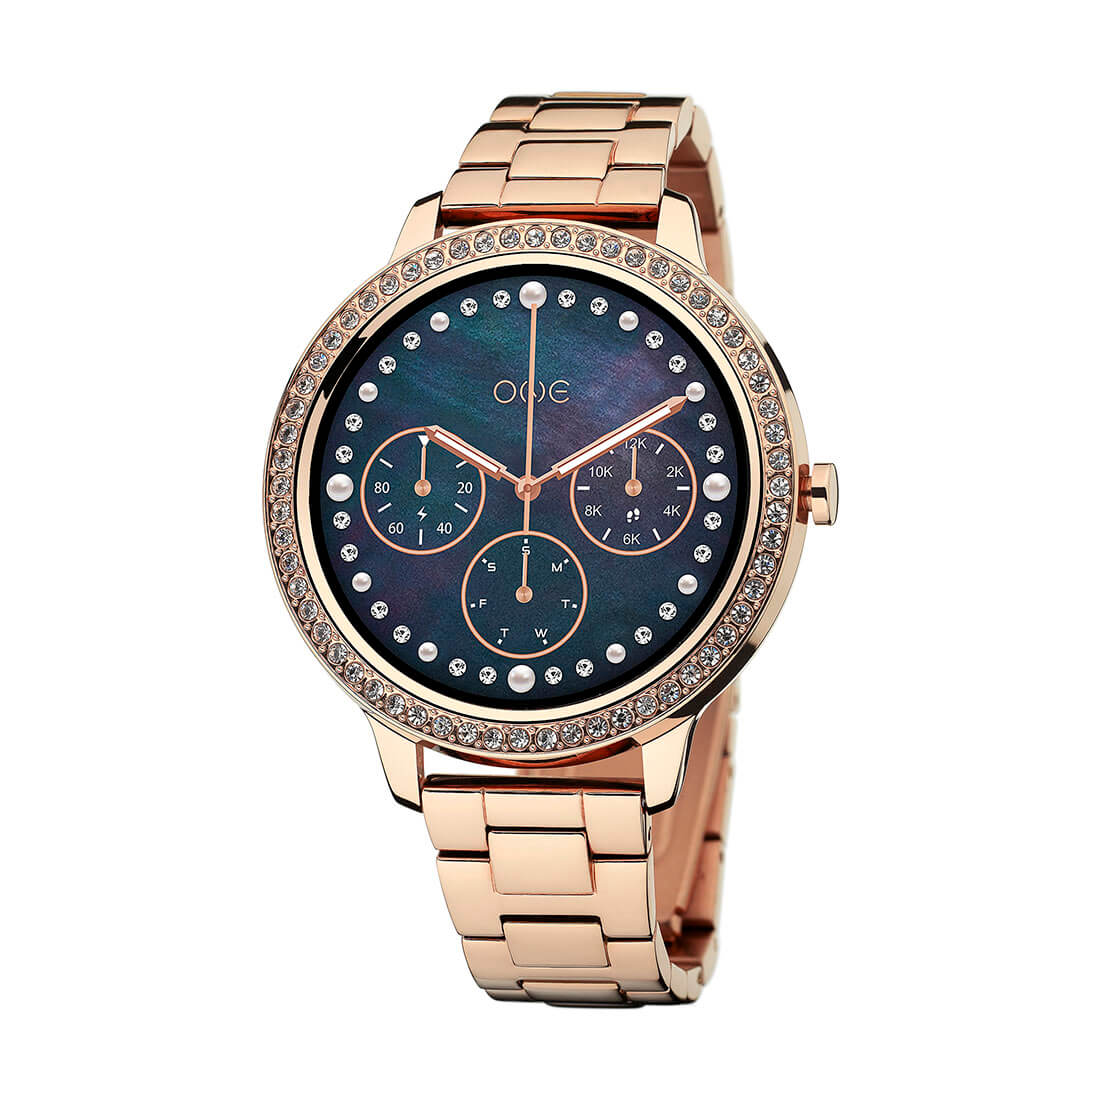 smartwatch-one-bluemoon